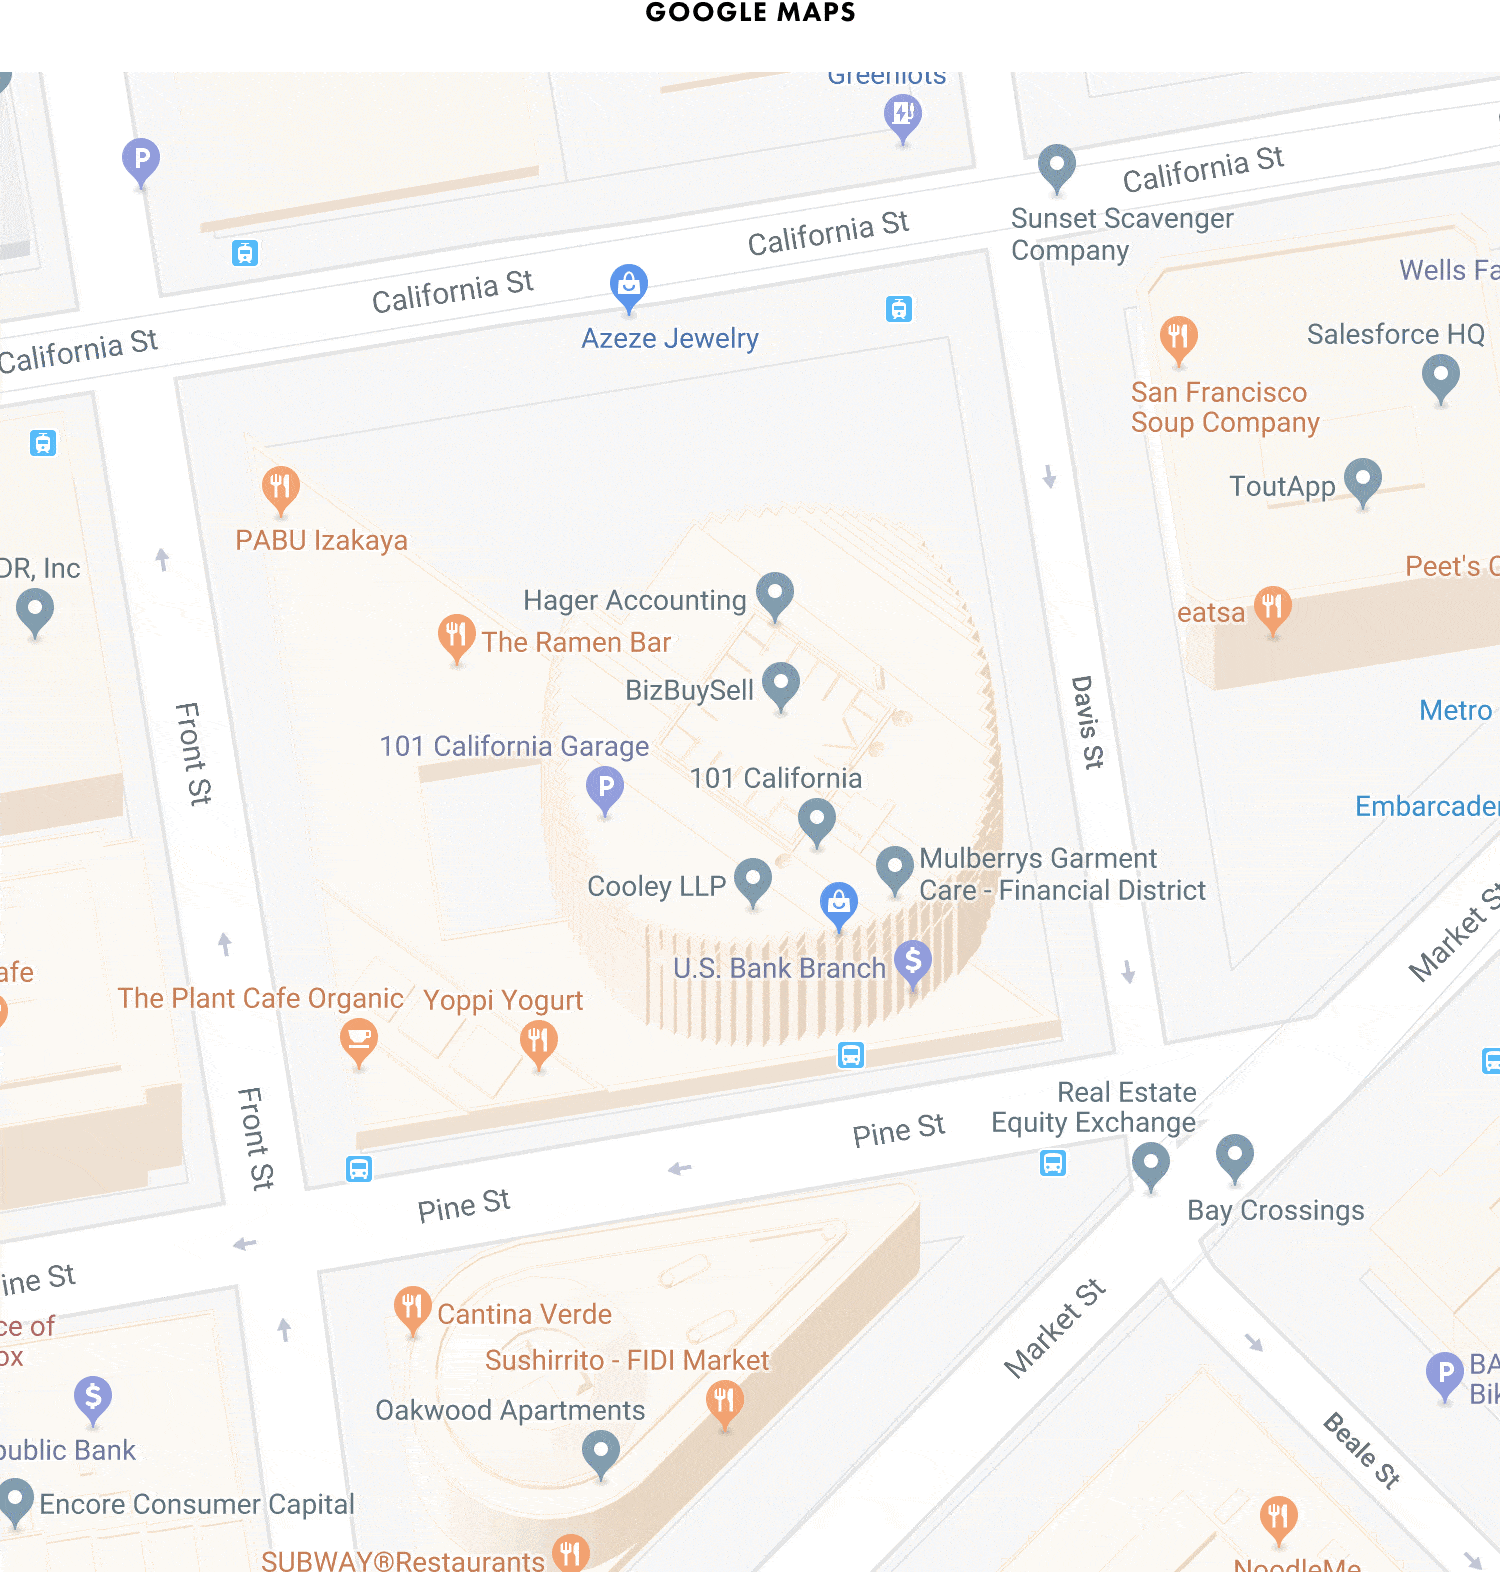 google maps buildings